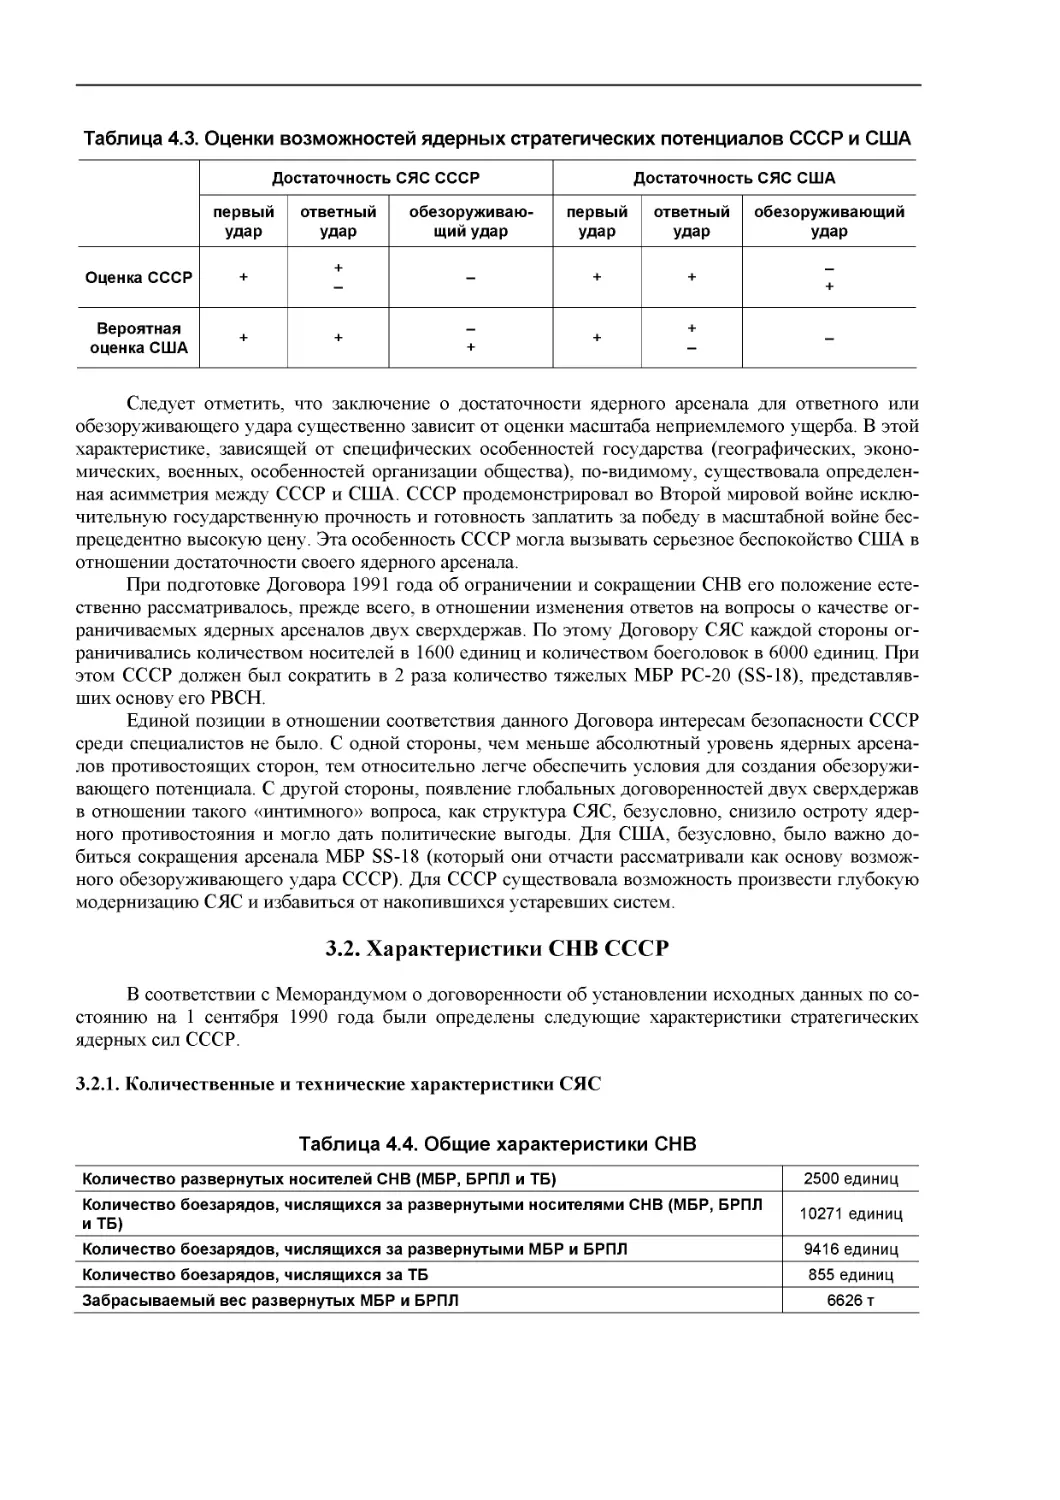 3.2. Характеристики СНВ СССР
3.2.1. Количественные и технические характеристики СЯС